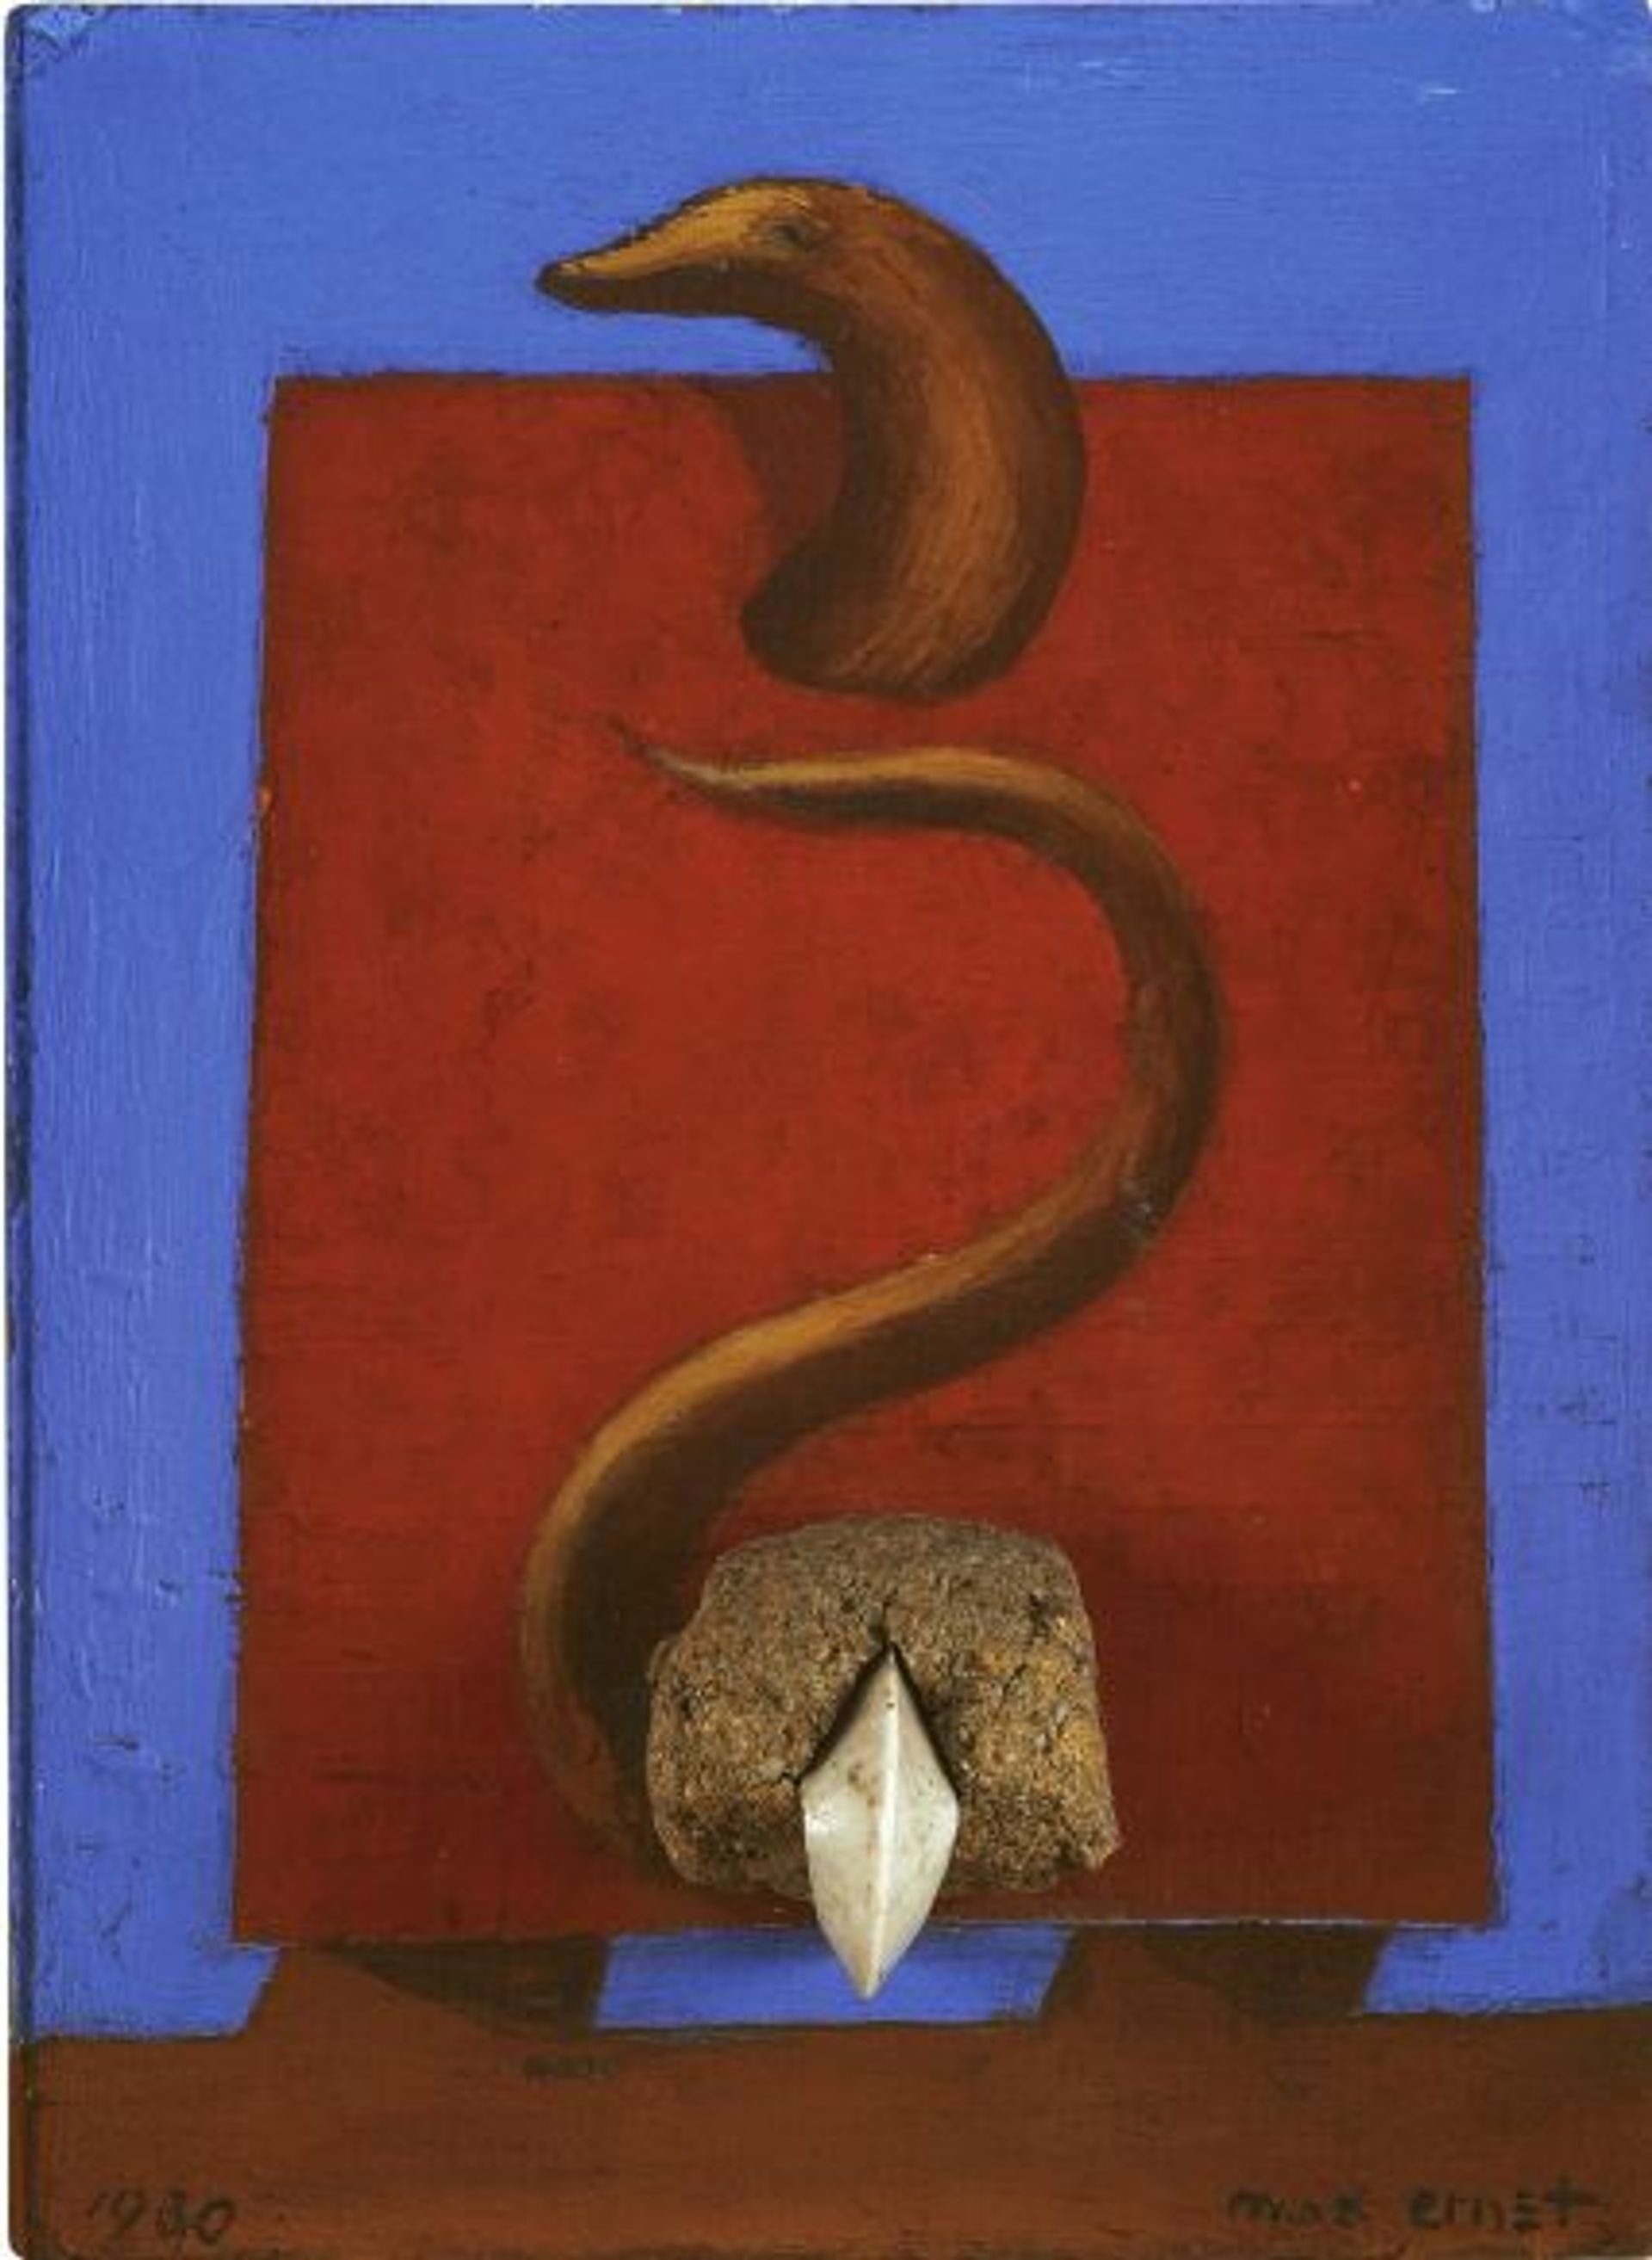 Max Ernst, Matin et soir, 1930, huile sur bois. © Phillips